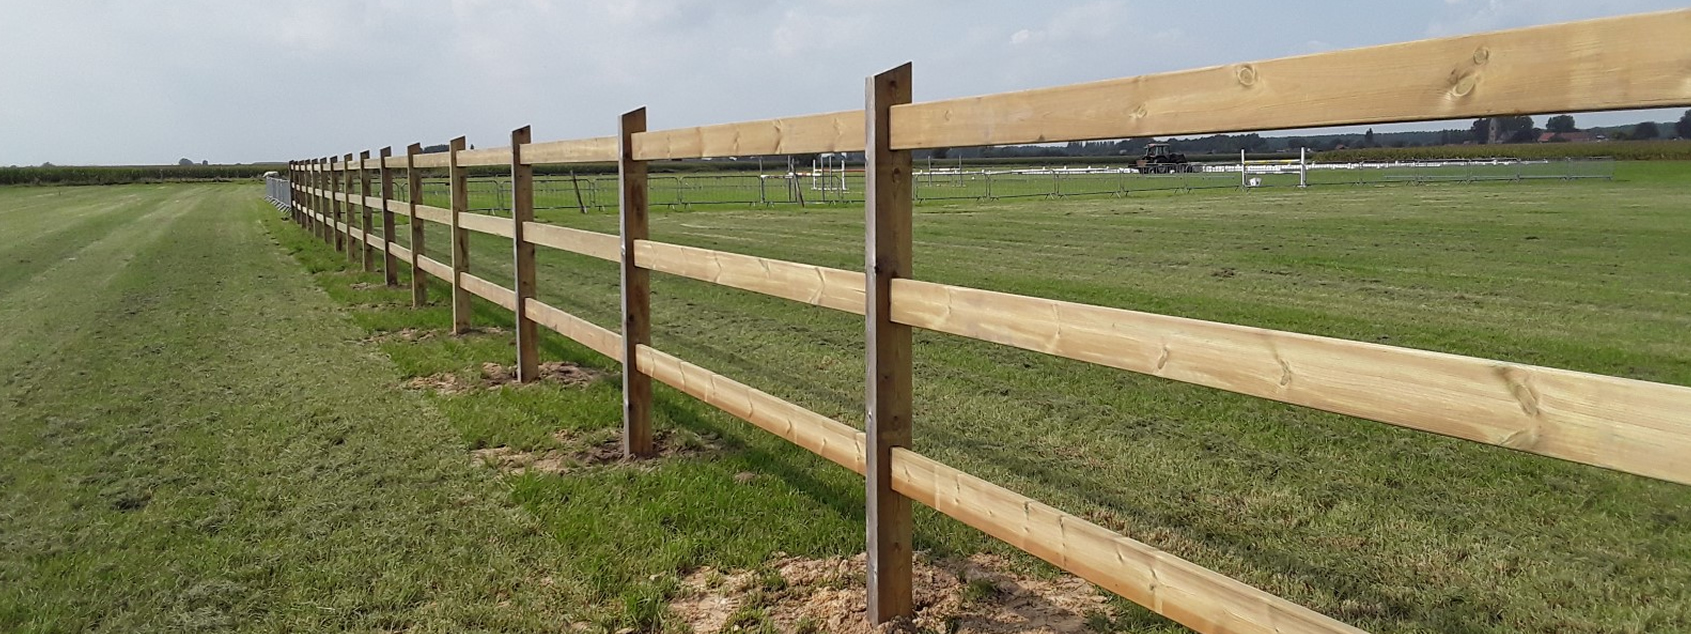 Houten afsluiting voor paardenwei met houten palen voor klant uit regio Lievegem